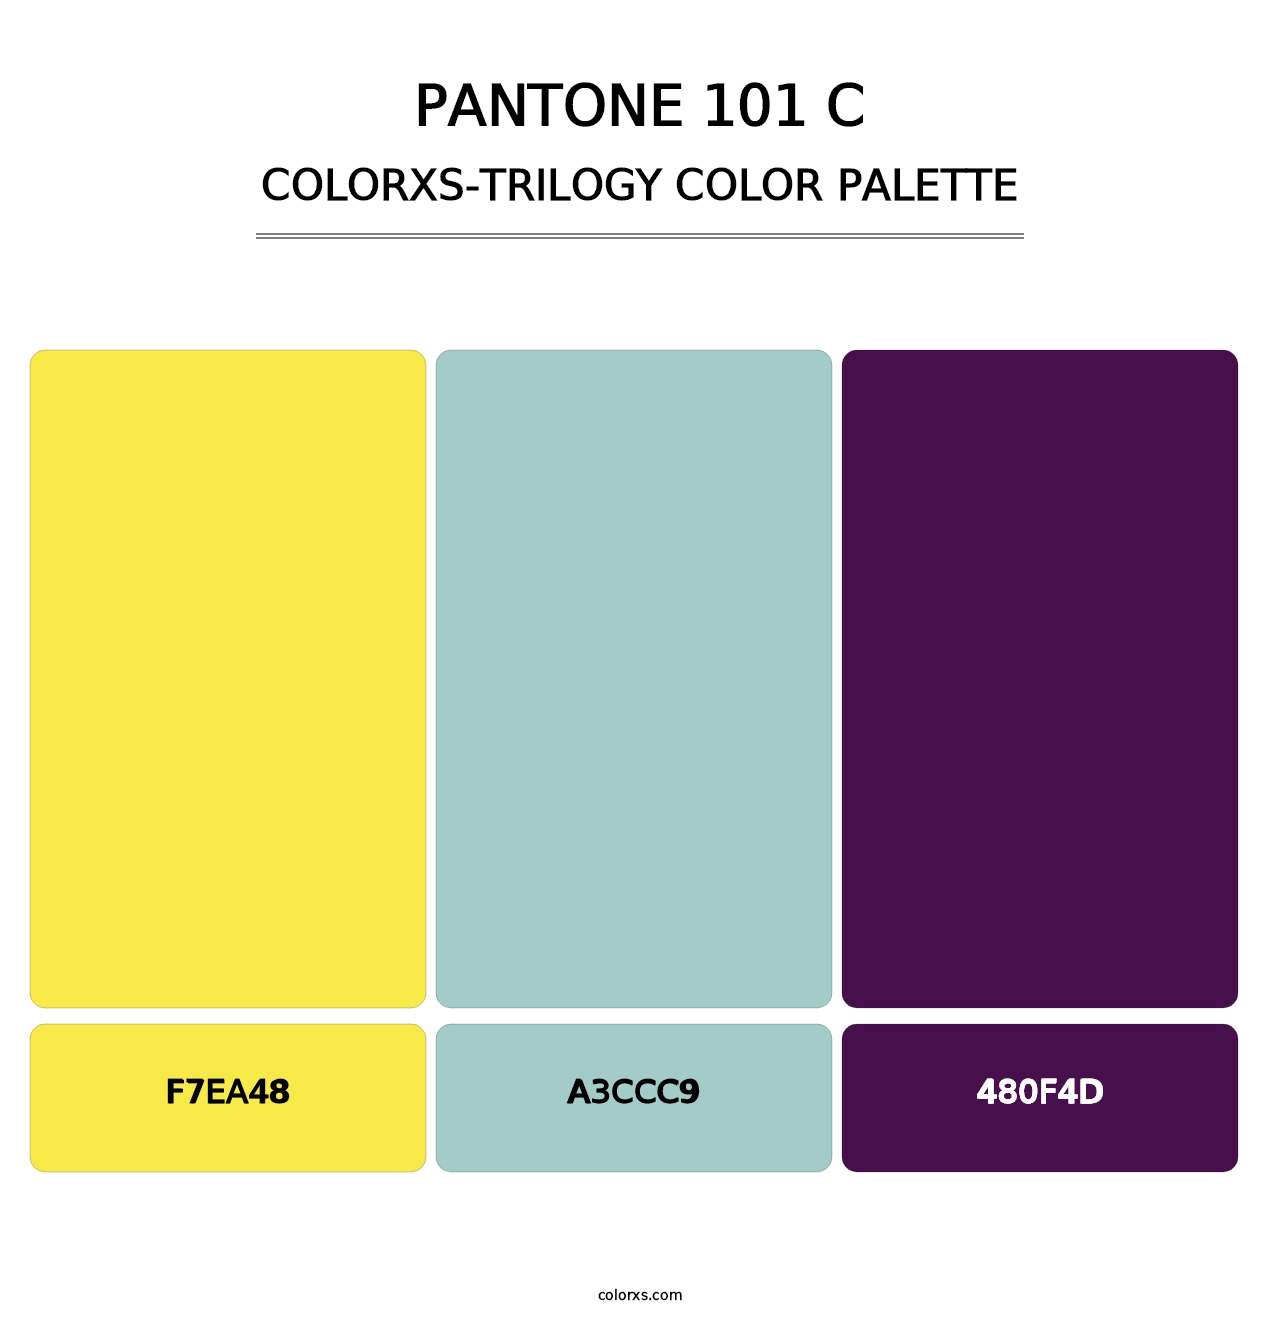 PANTONE 101 C - Colorxs Trilogy Palette